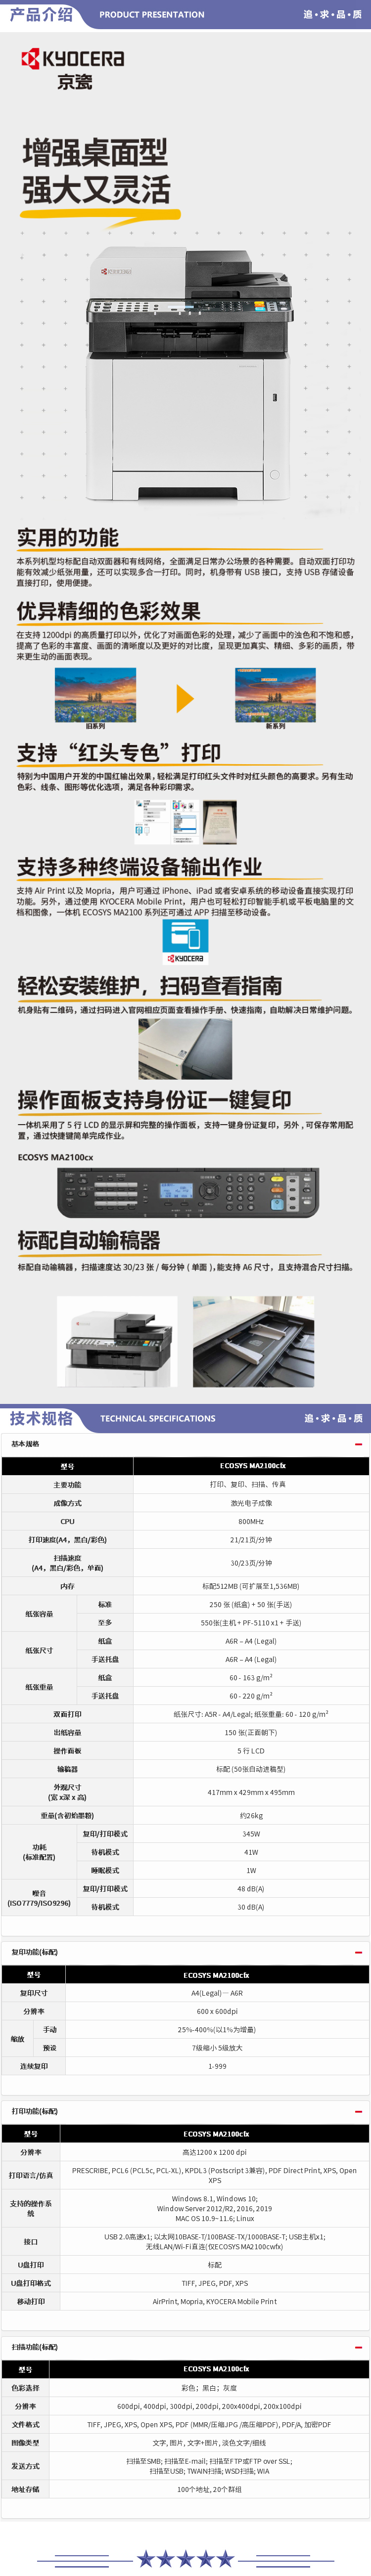 京瓷 Kyocera ECOSYS MA2100cfx A4彩色多功能一体机 21页（复印+打印+扫描+传真+输稿器+单纸盒） 2.jpg